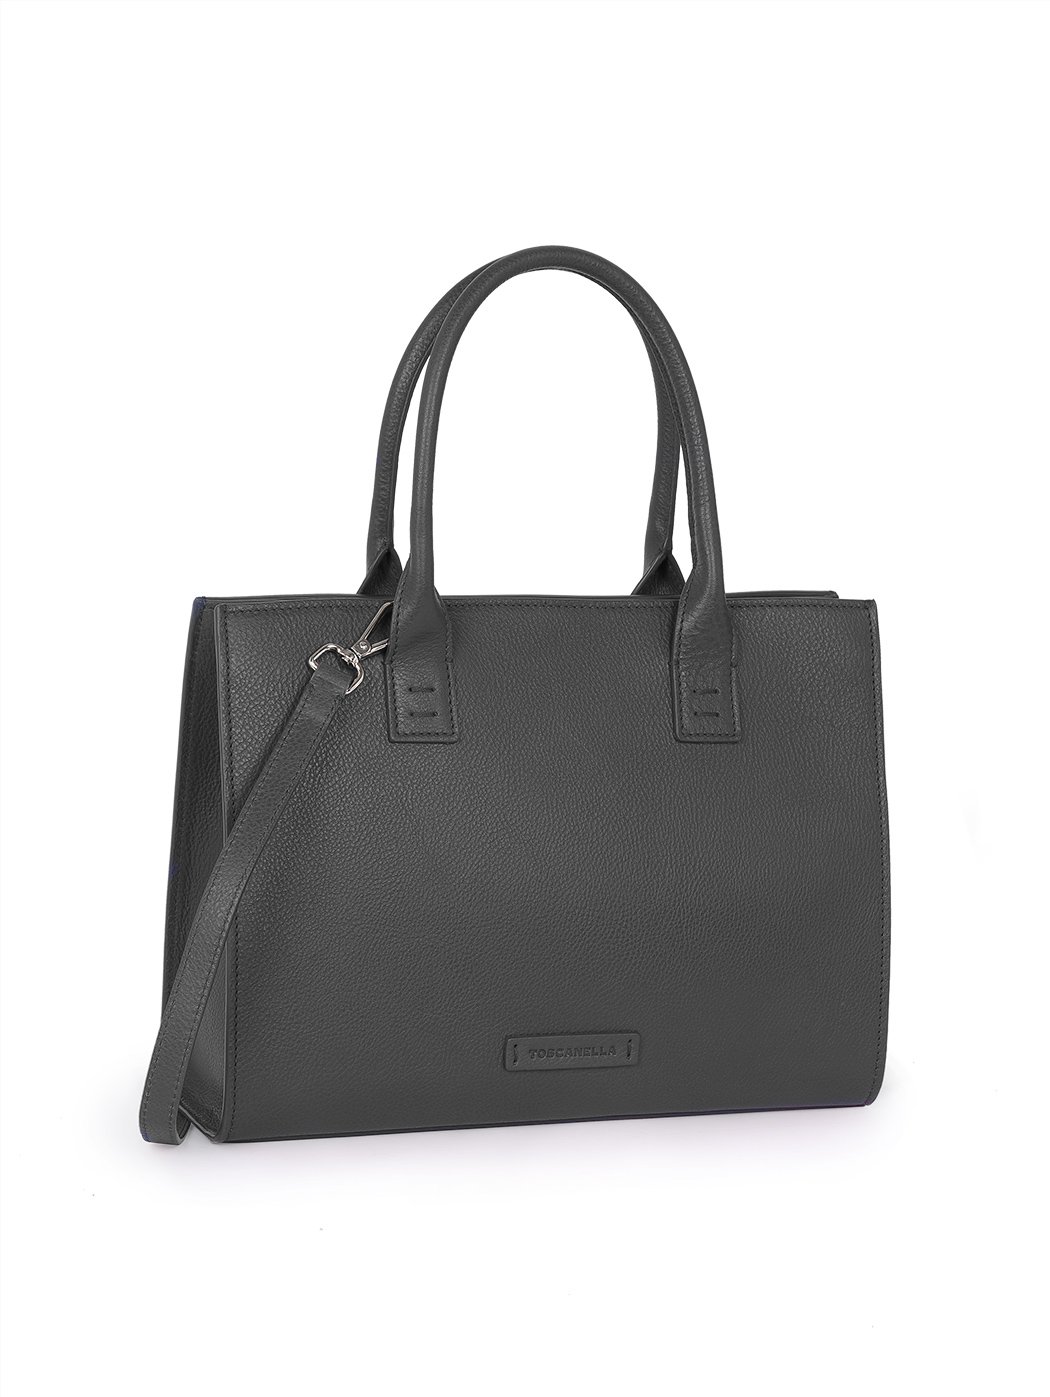 Black Handbag With Shoulder Strap